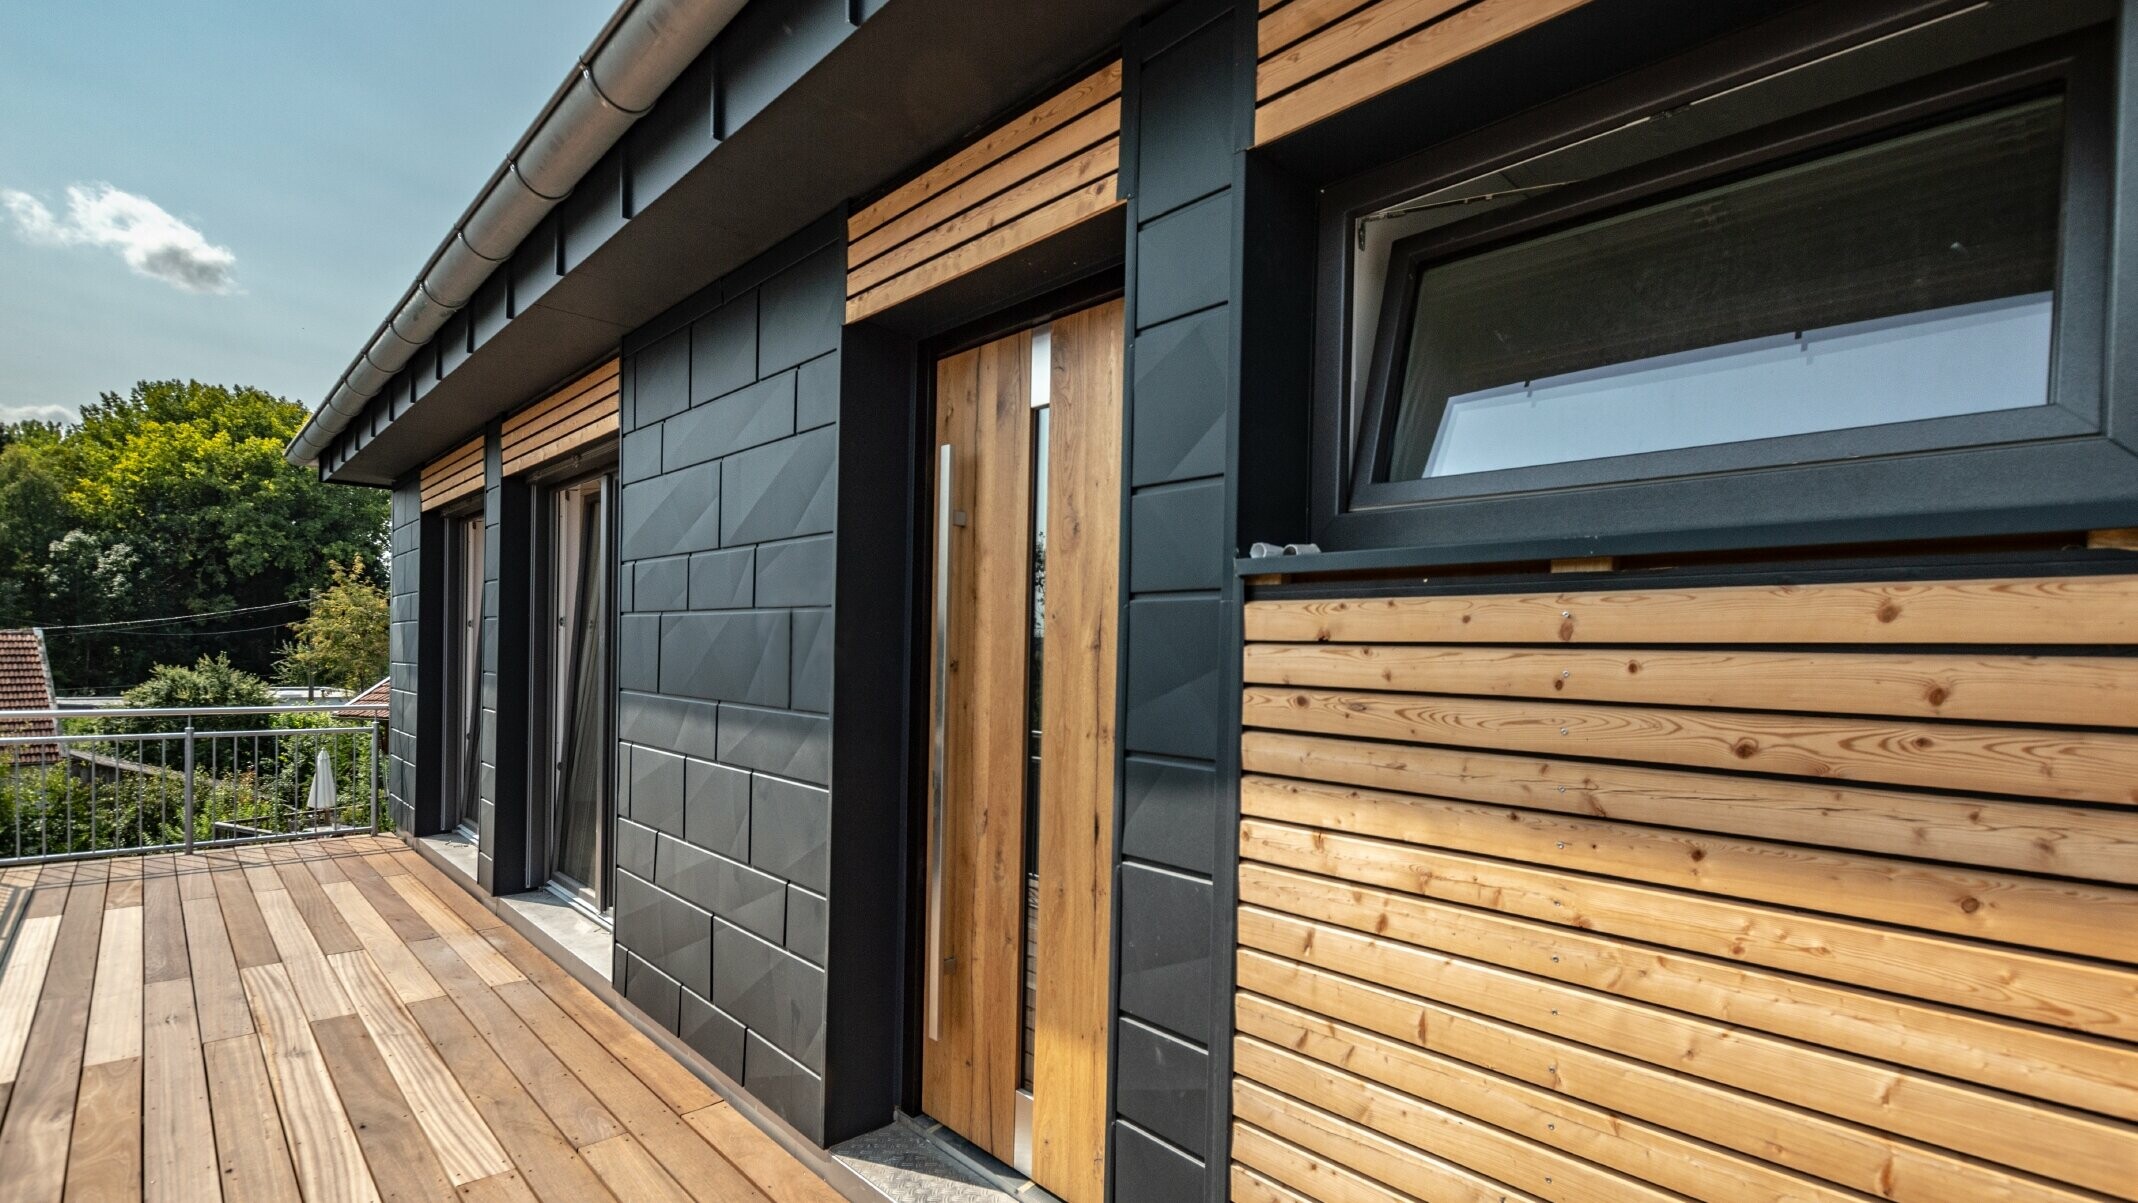 Fassadengestaltung durch Mischung der Materialien Aluminium - PREFA Siding.X in Anthrazit - und horizontalen Holzleisten.